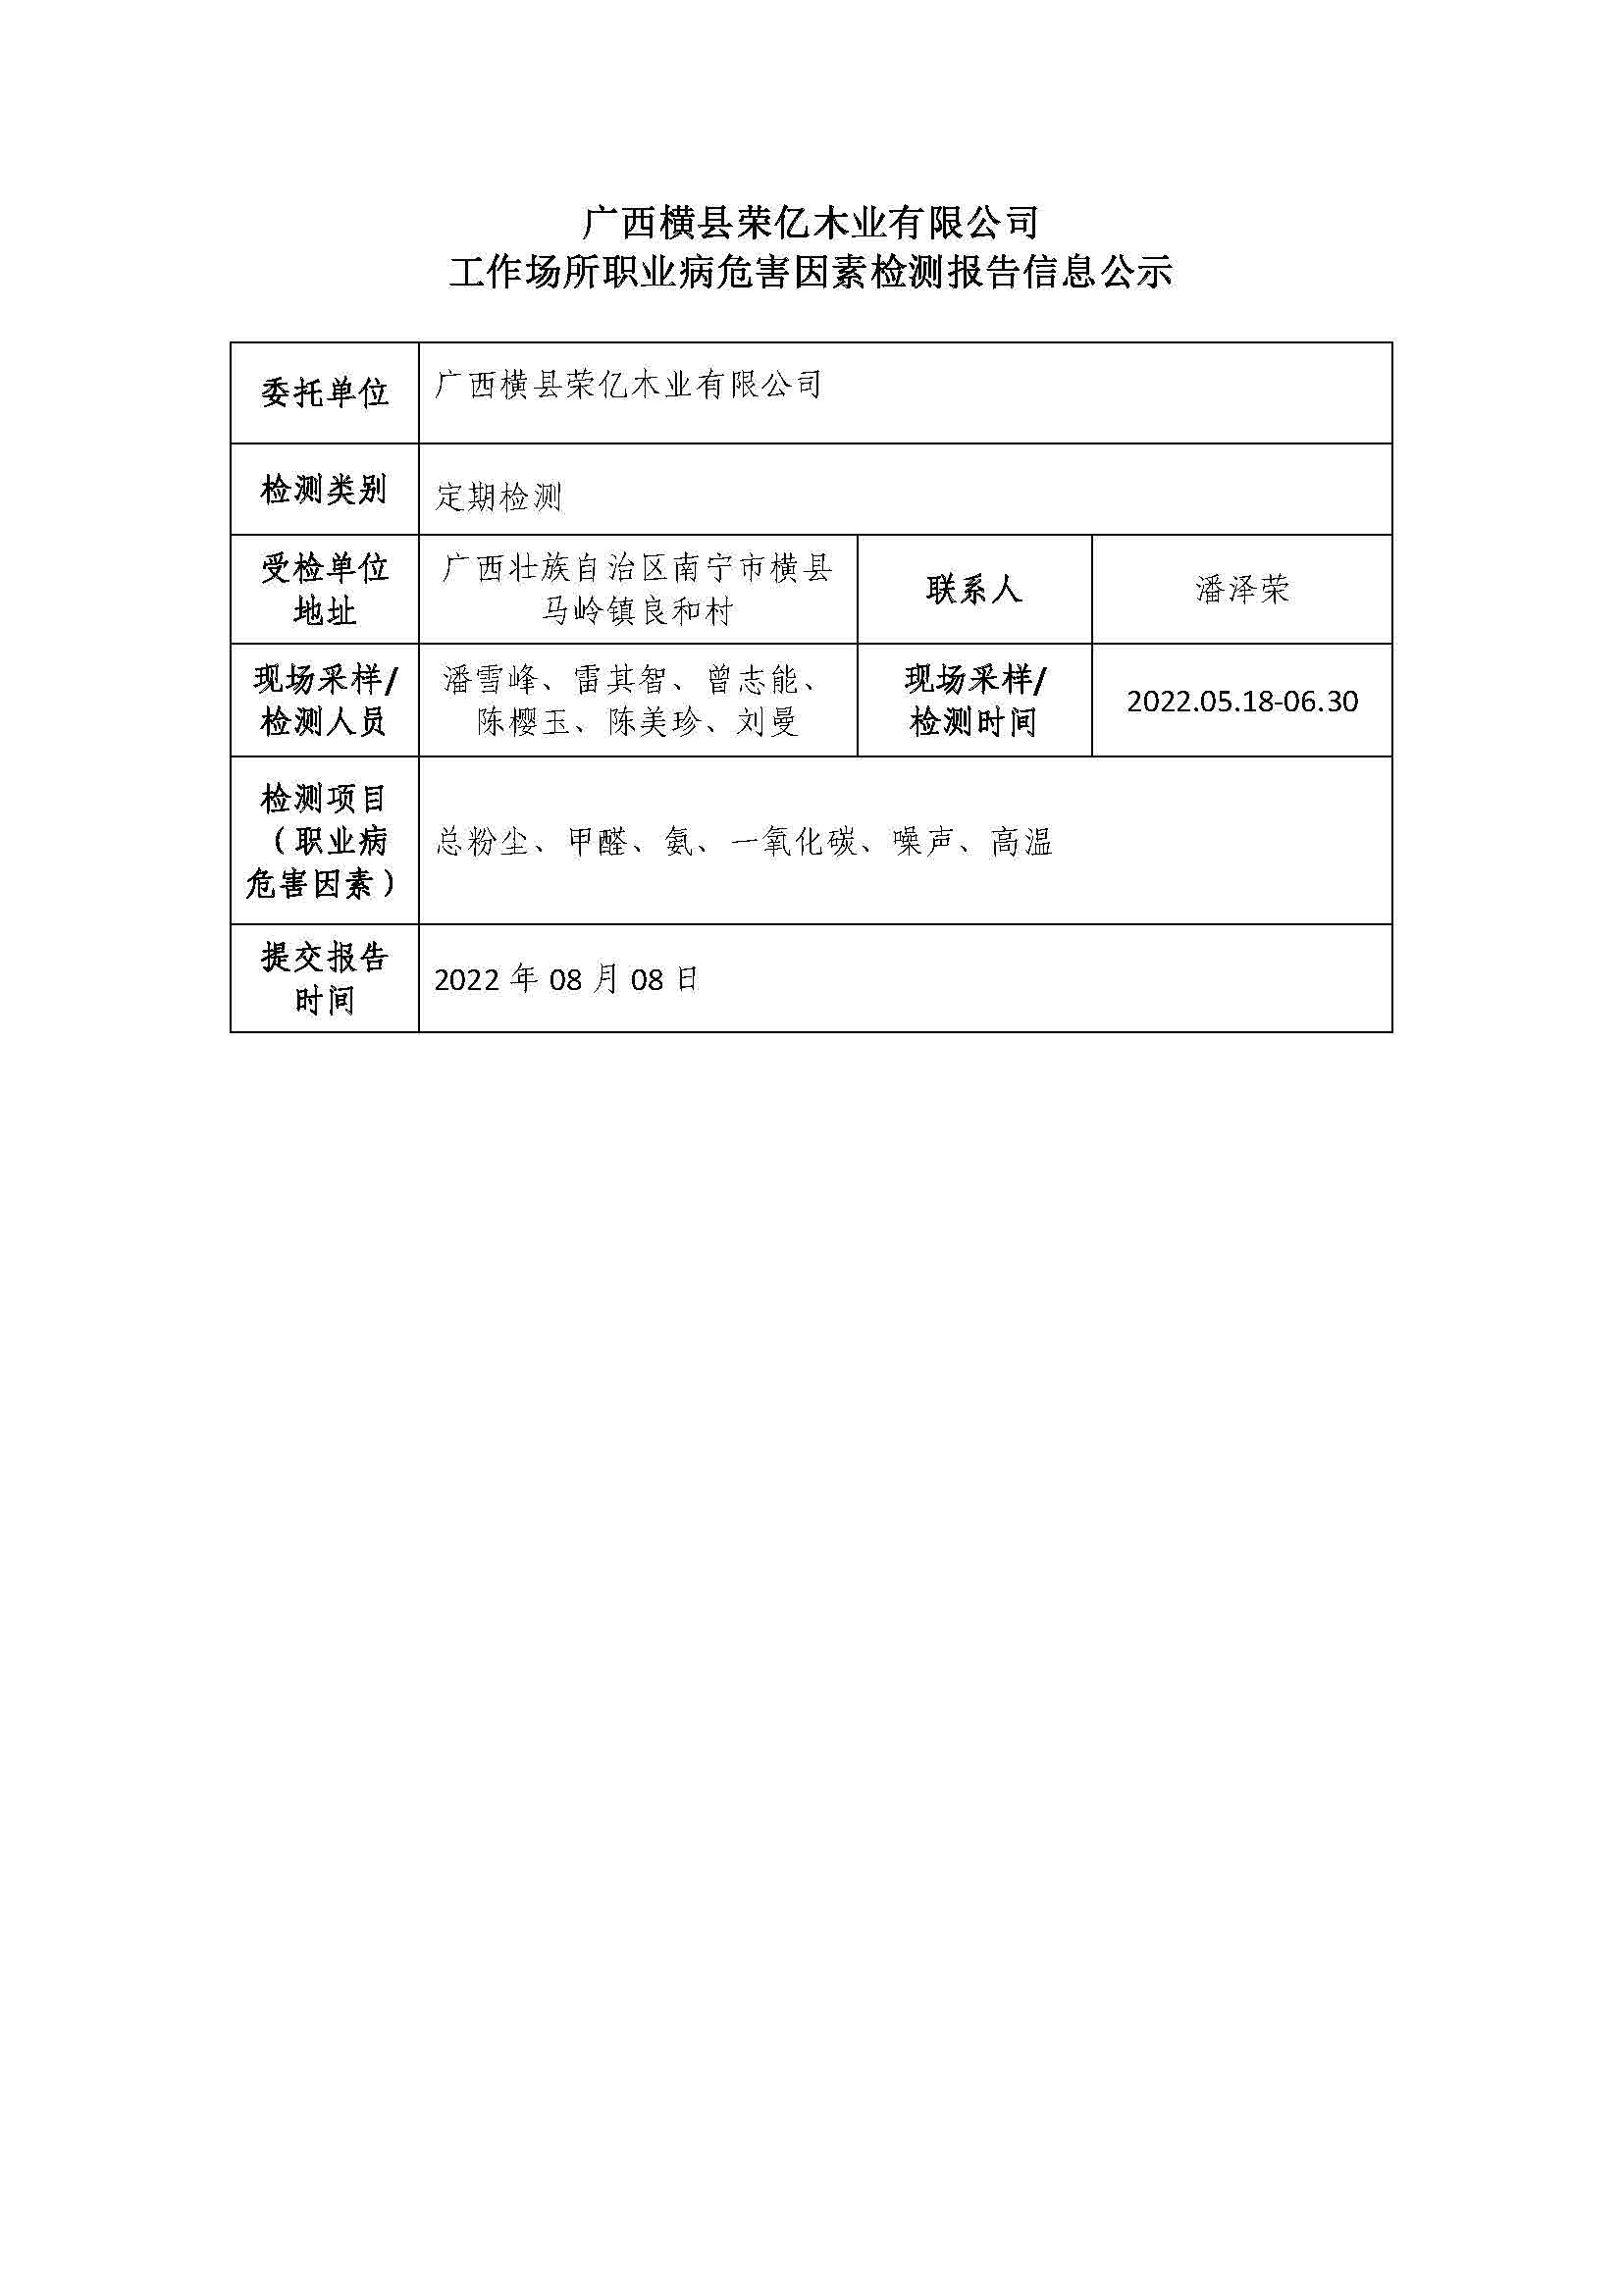 广西横县荣亿木业有限公司工作场所职业病危害因素检测报告信息公示